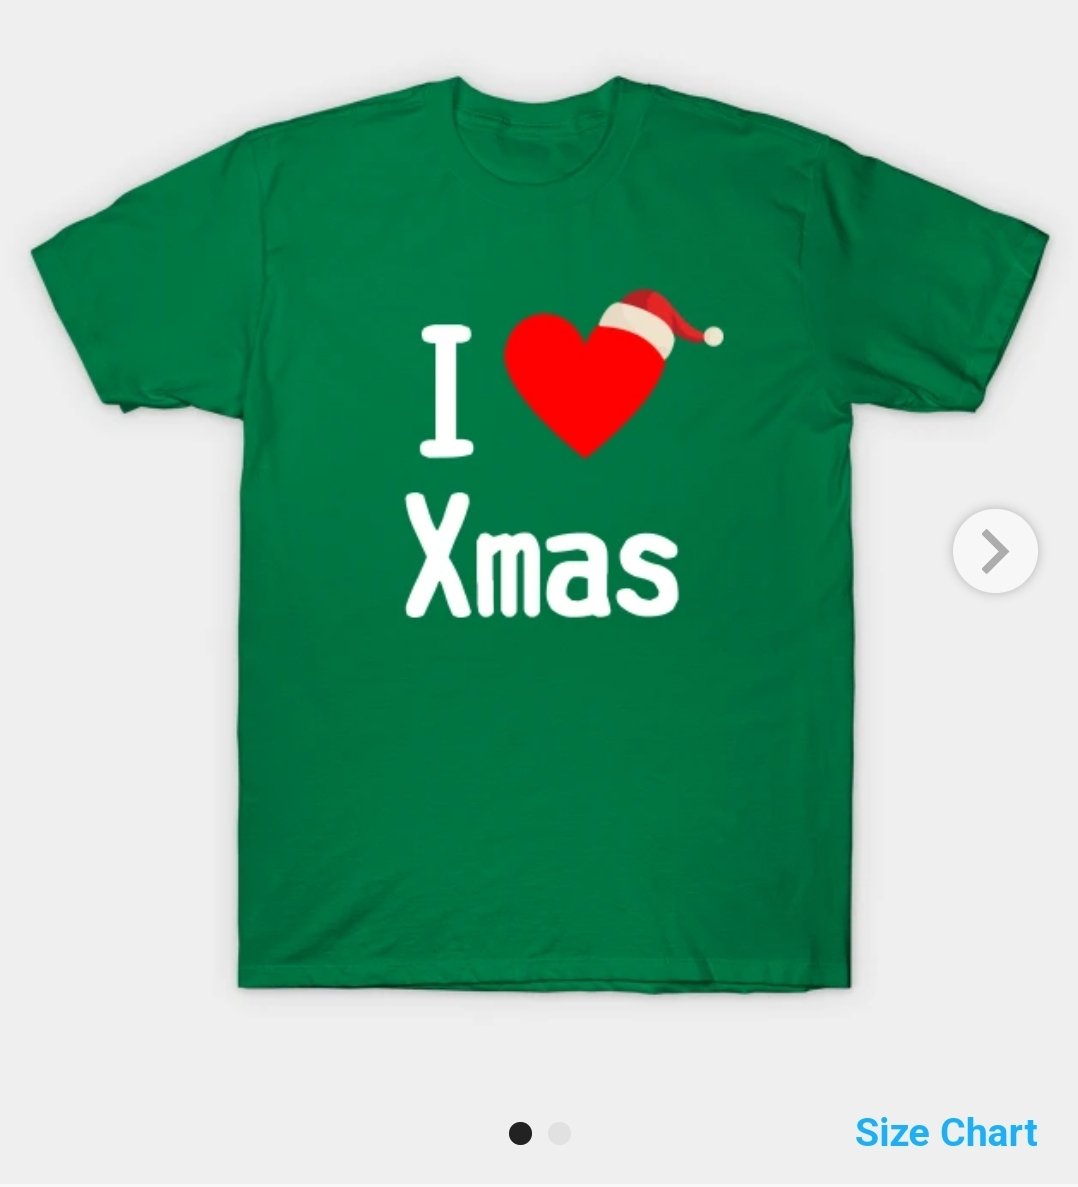 SAVE 36% on I ❤️ Xmas I LOVE Xmas I HEART Xmas T-Shirt

teepublic.com/t-shirt/352101…

#tshirt #tshirts #tshirtdesign #Sales #Christmas #XMAS2022 #xmasjoy22 #Xmas #ilovechristmas #ilovexmas